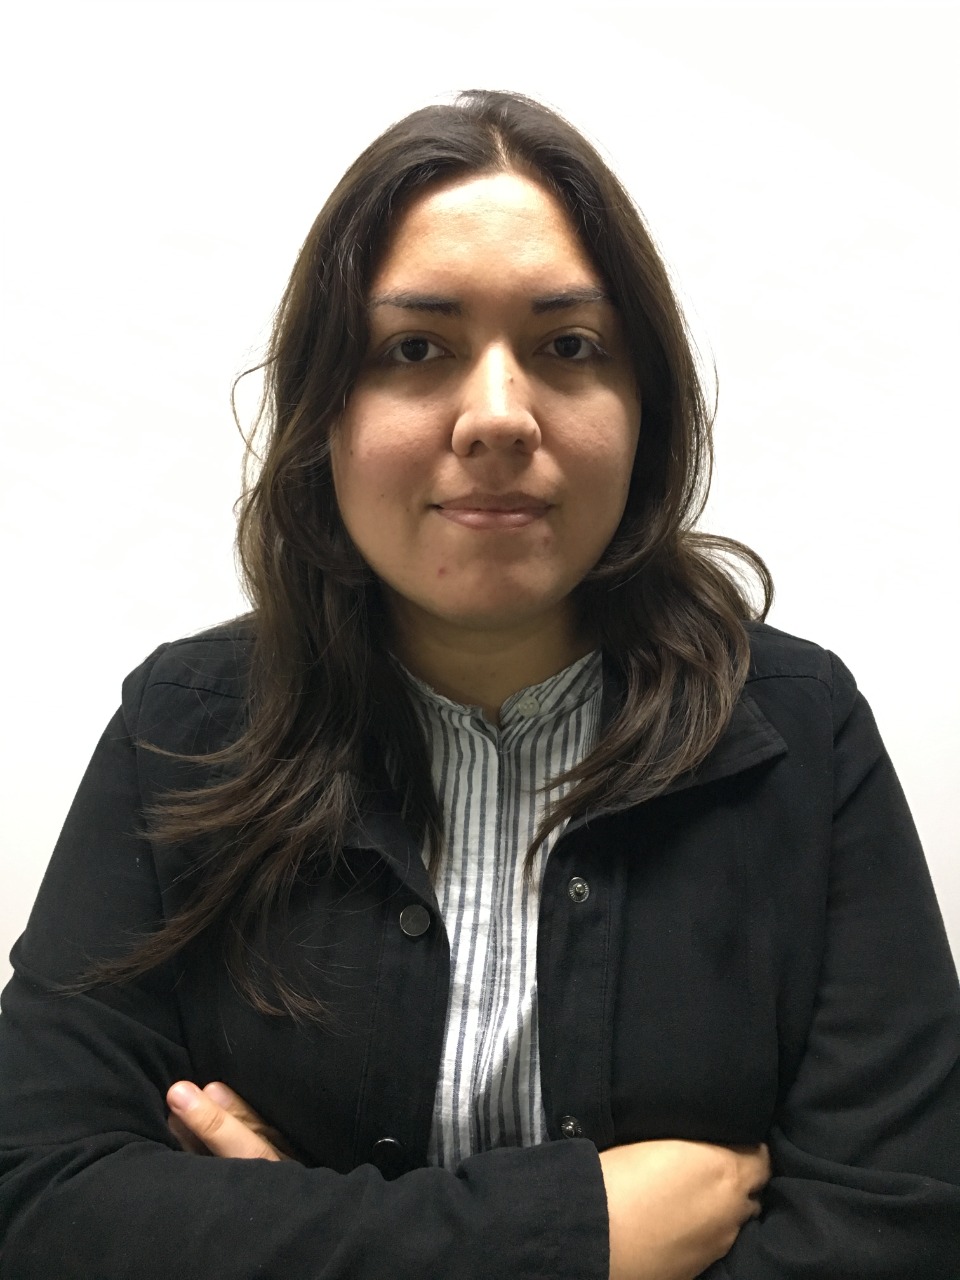 Salvadoran journalist Xenia Oliva